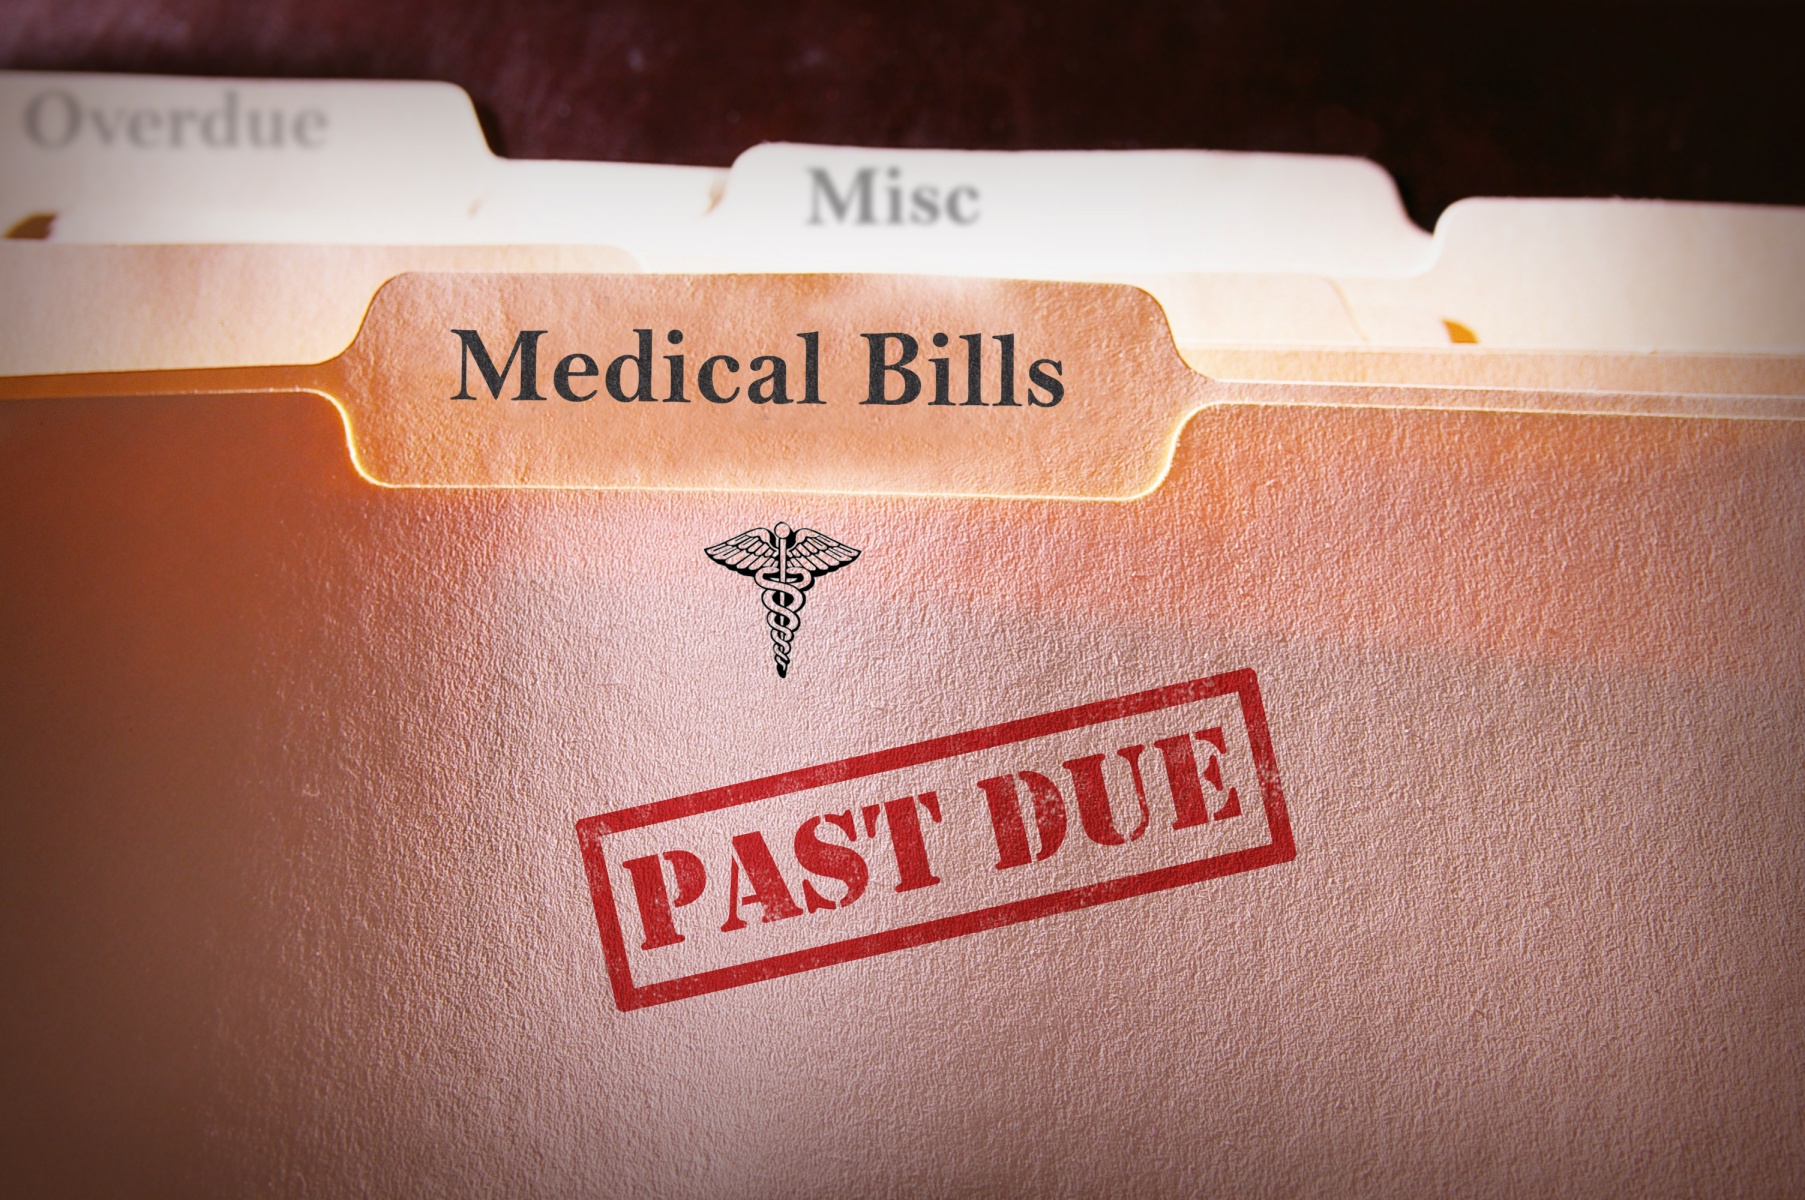 "medical bills past due" manilla folder